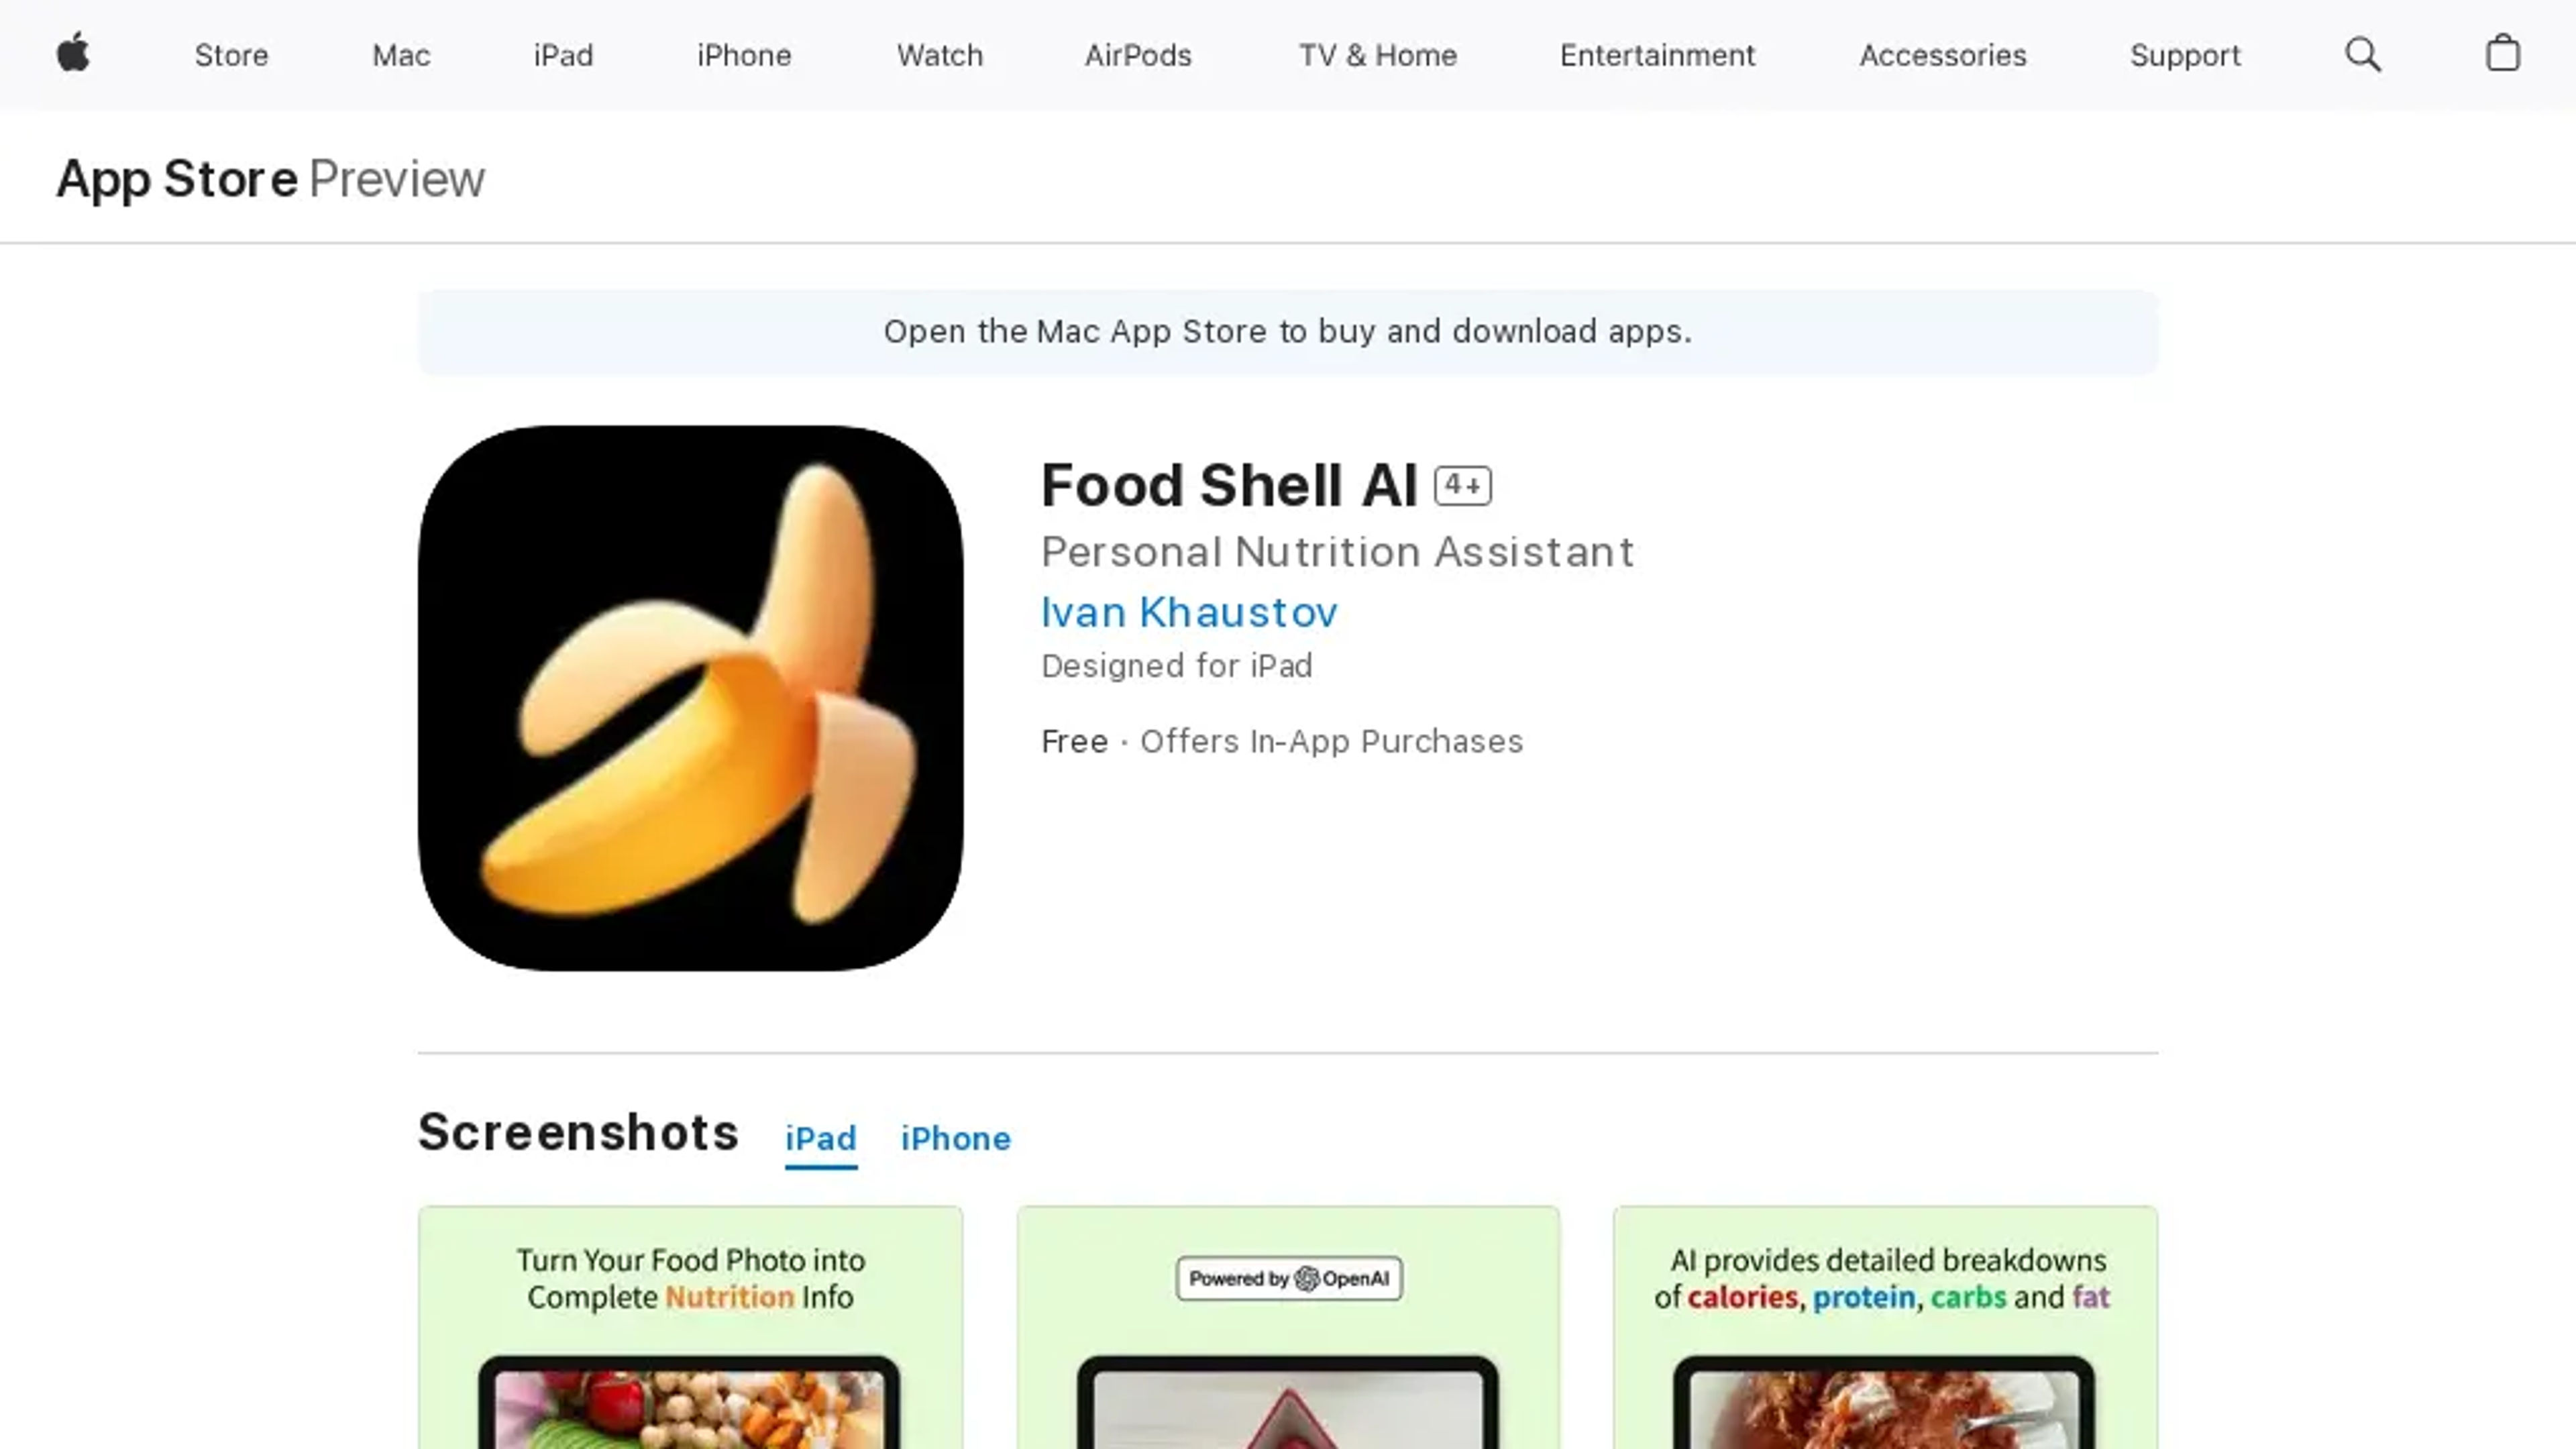 Food Shell AI